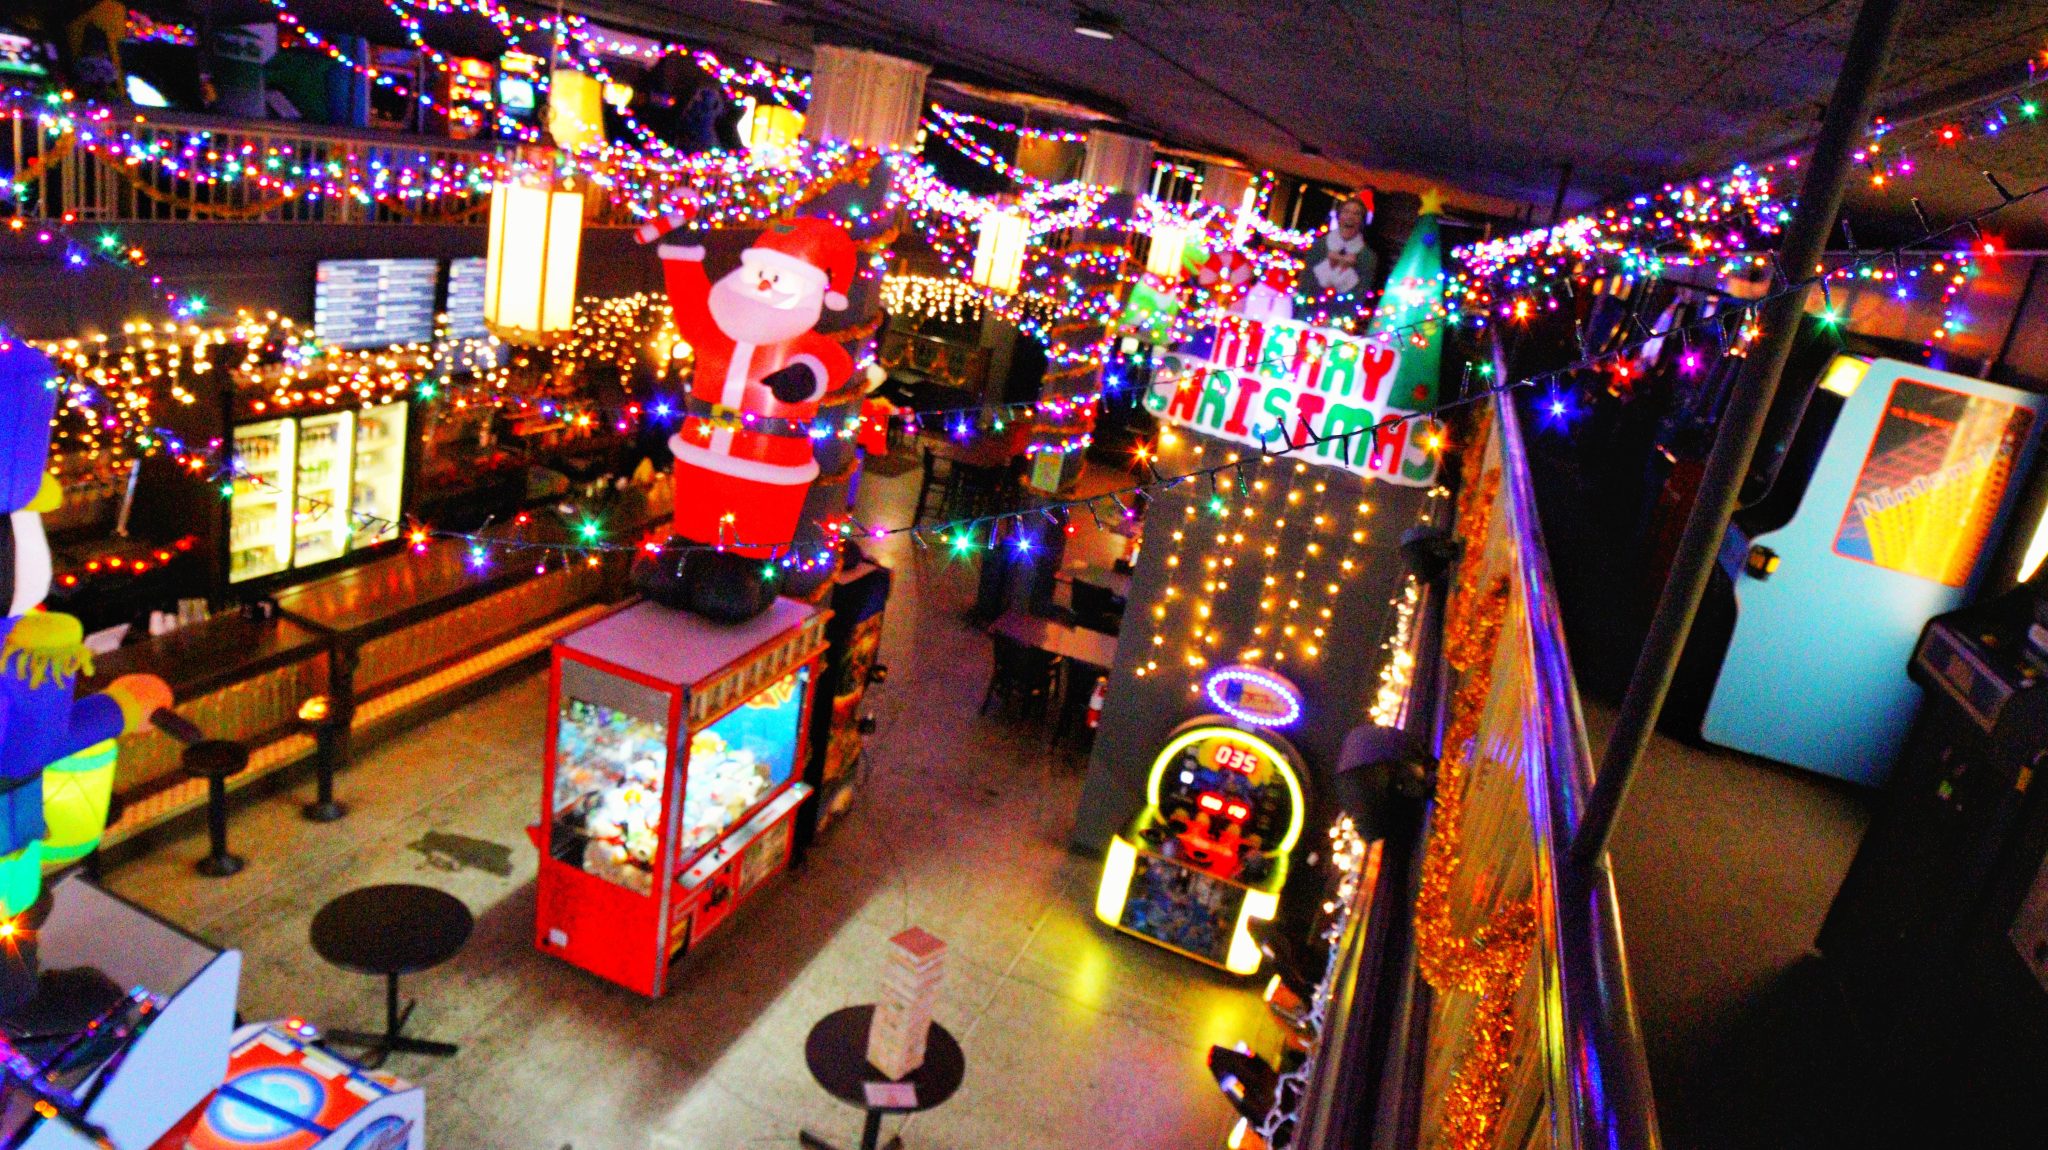 Iowa And Illinois' Analog Arcades Celebrating The Holidays!